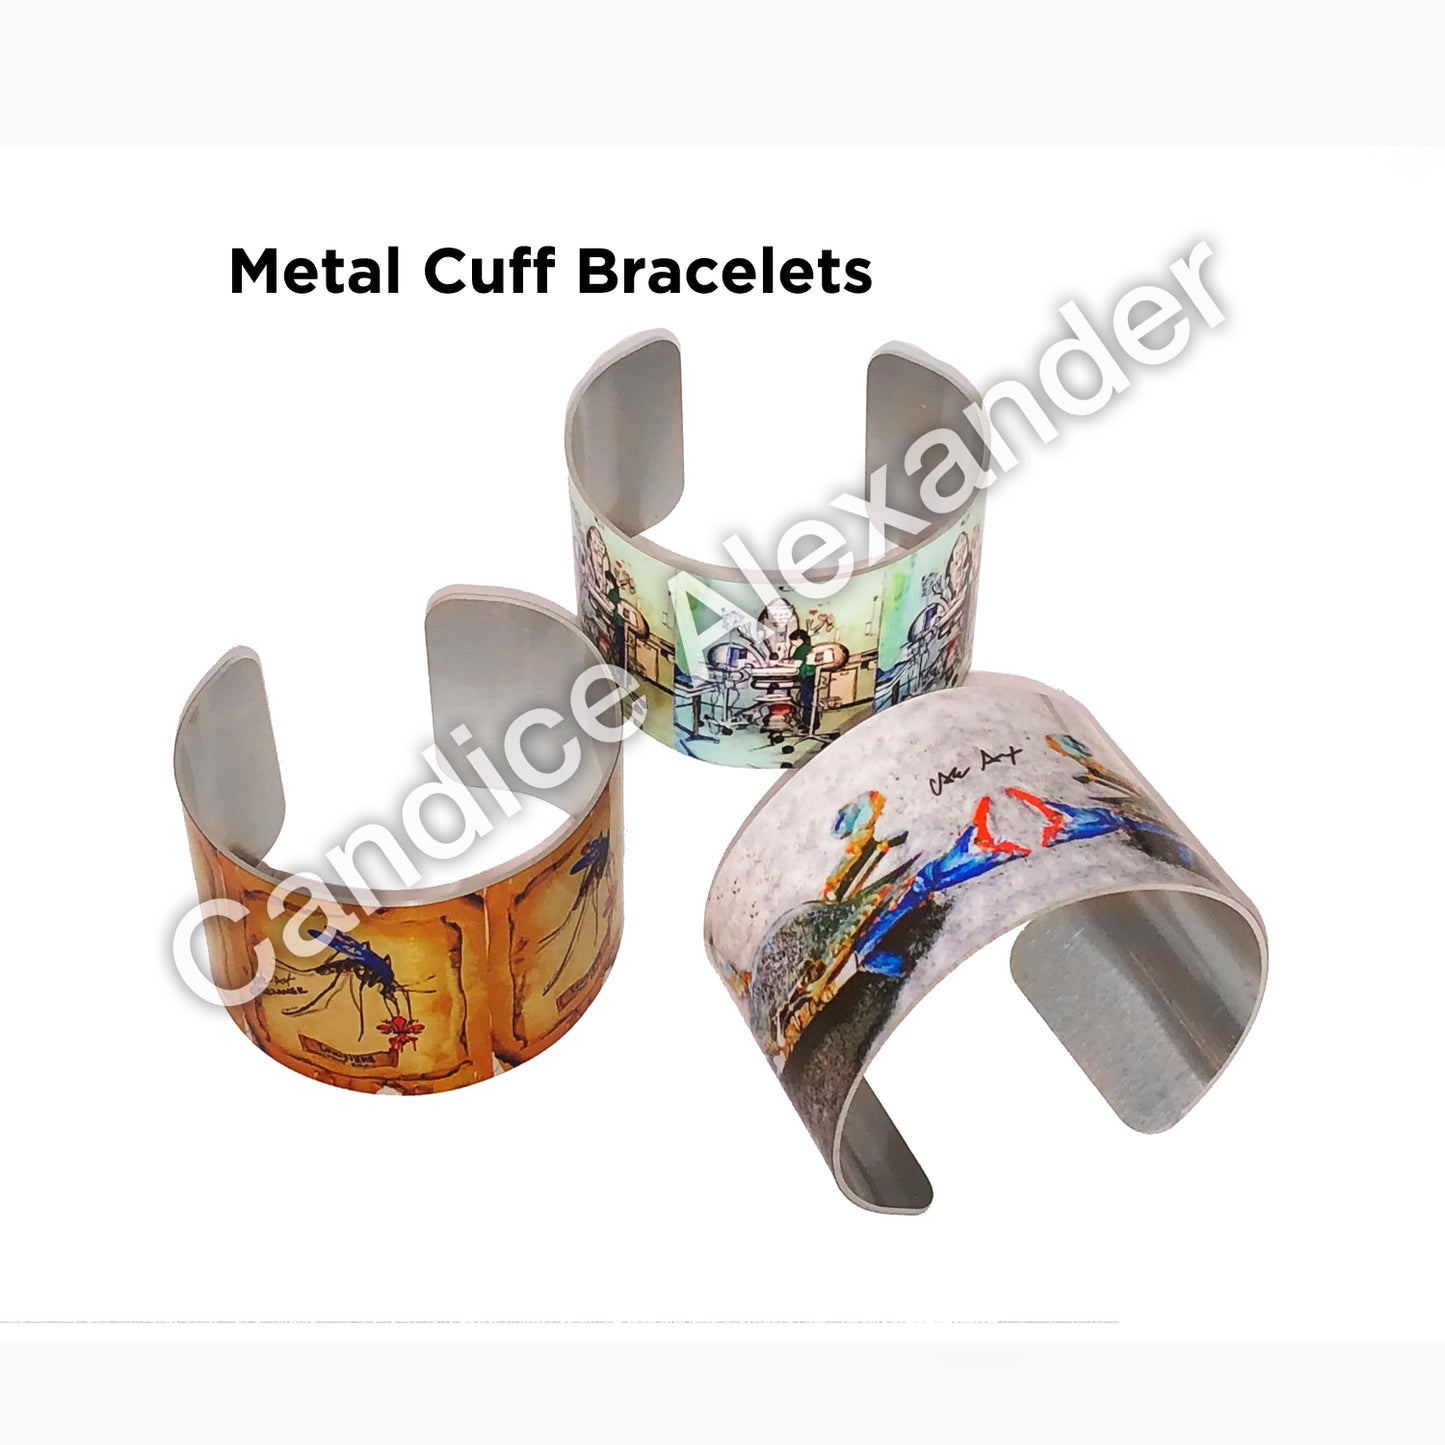 Customizable Metal Cuff